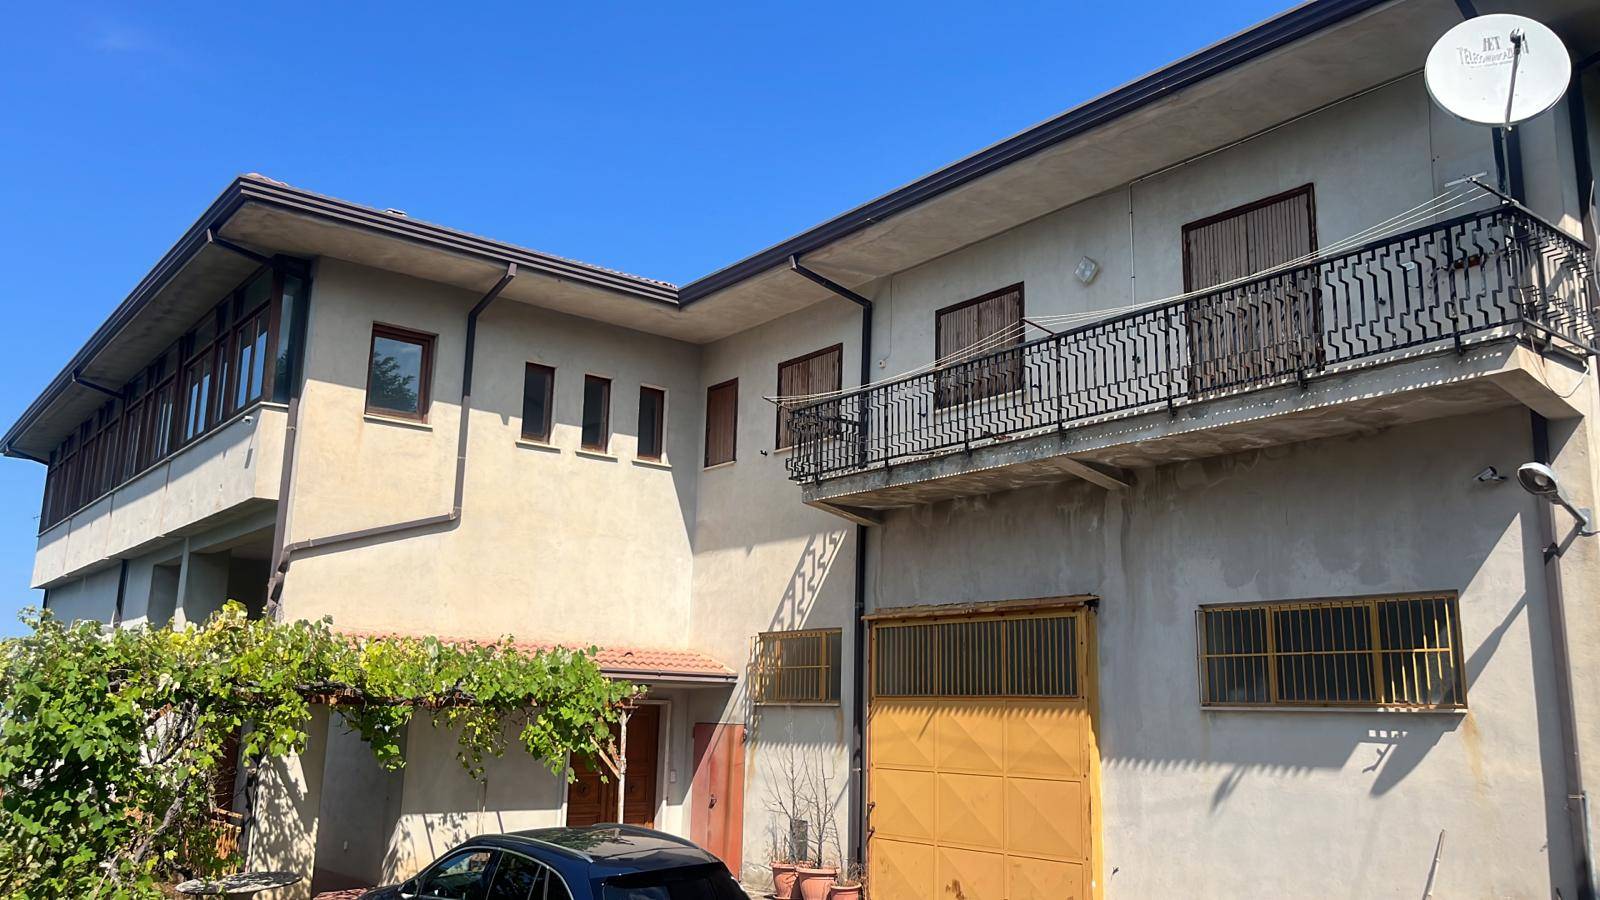 Appartamento in vendita a Spezzano Piccolo, 4 locali, prezzo € 90.000 | PortaleAgenzieImmobiliari.it